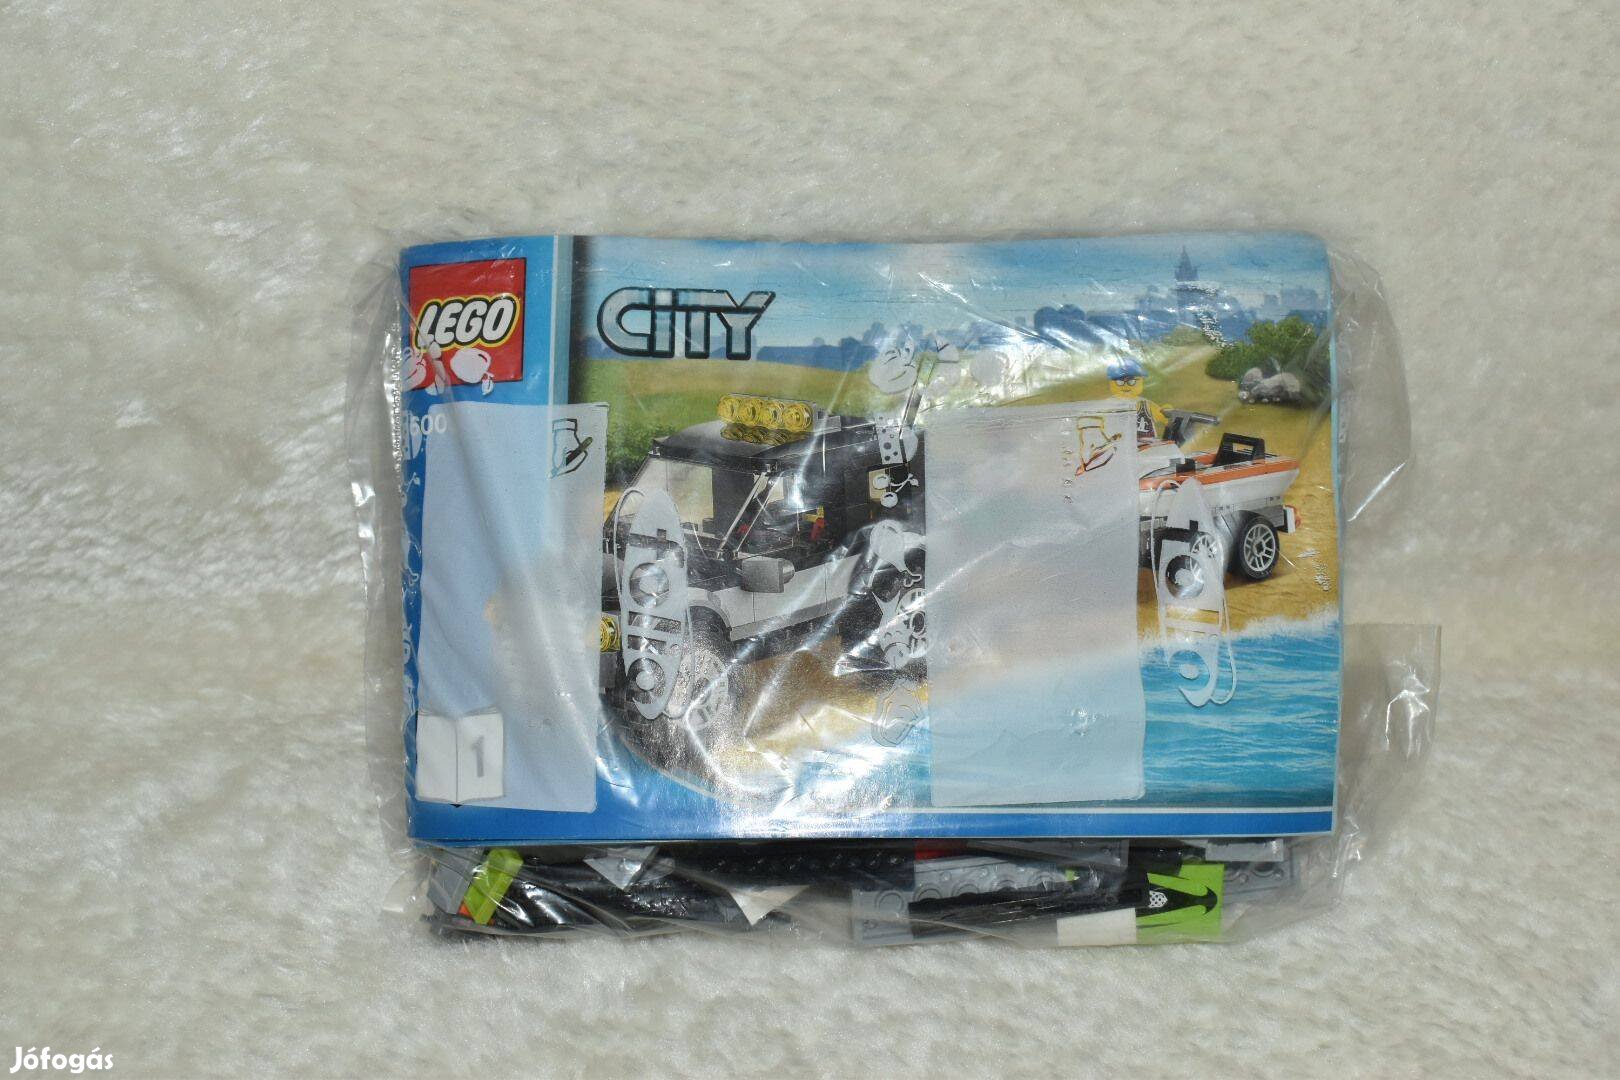 Lego City 60058 (Vontató autó és jet ski)